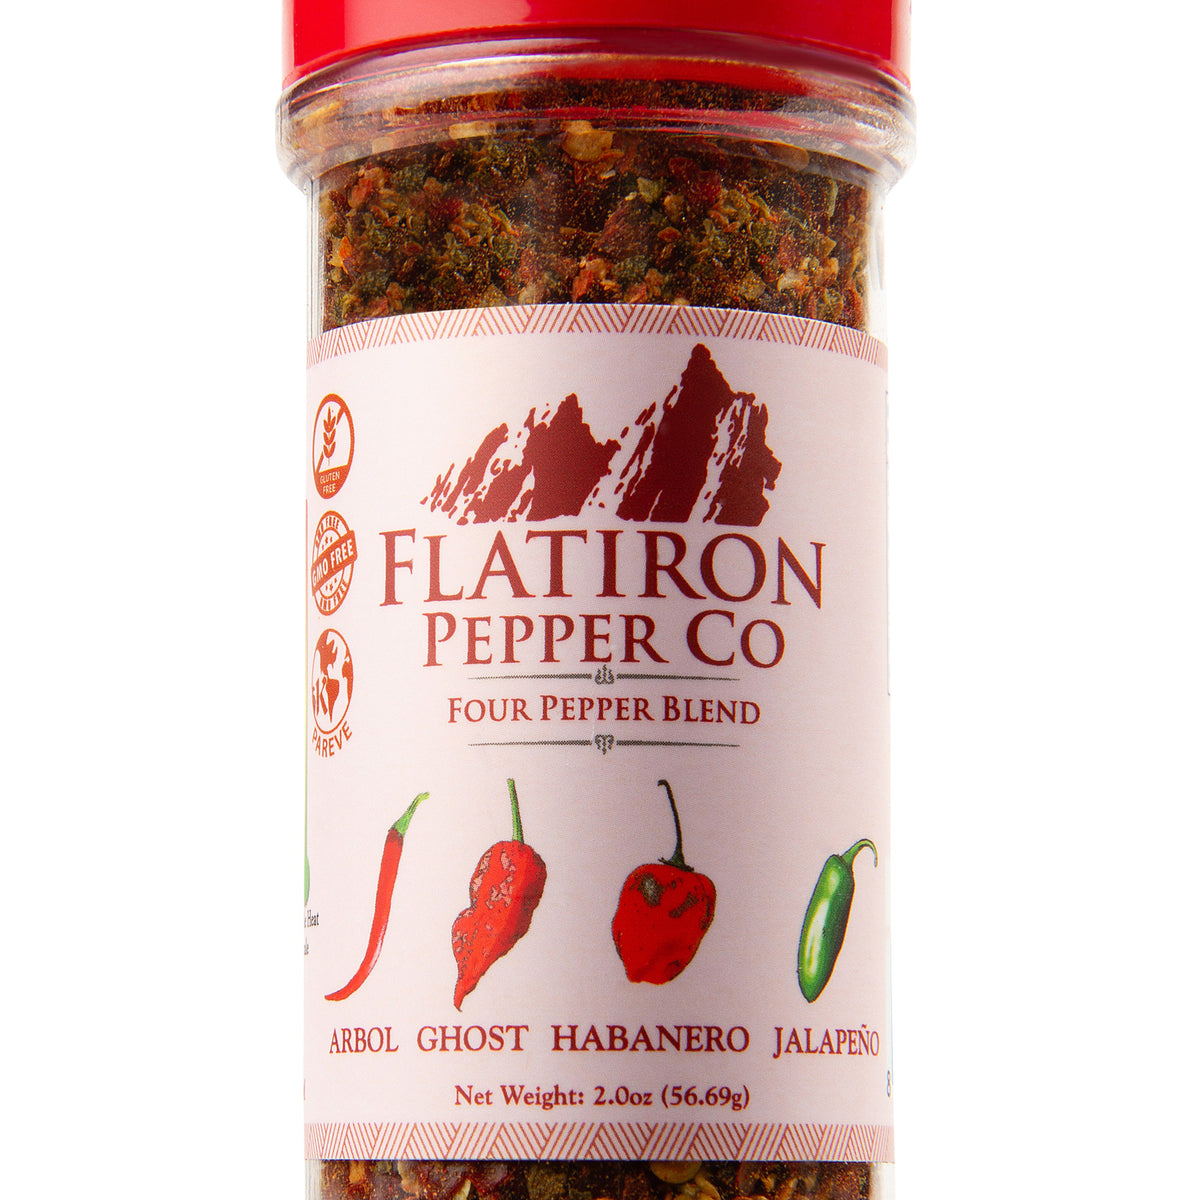 Colorado's Flatiron Pepper Company ignites the spice world, Colorado Jill